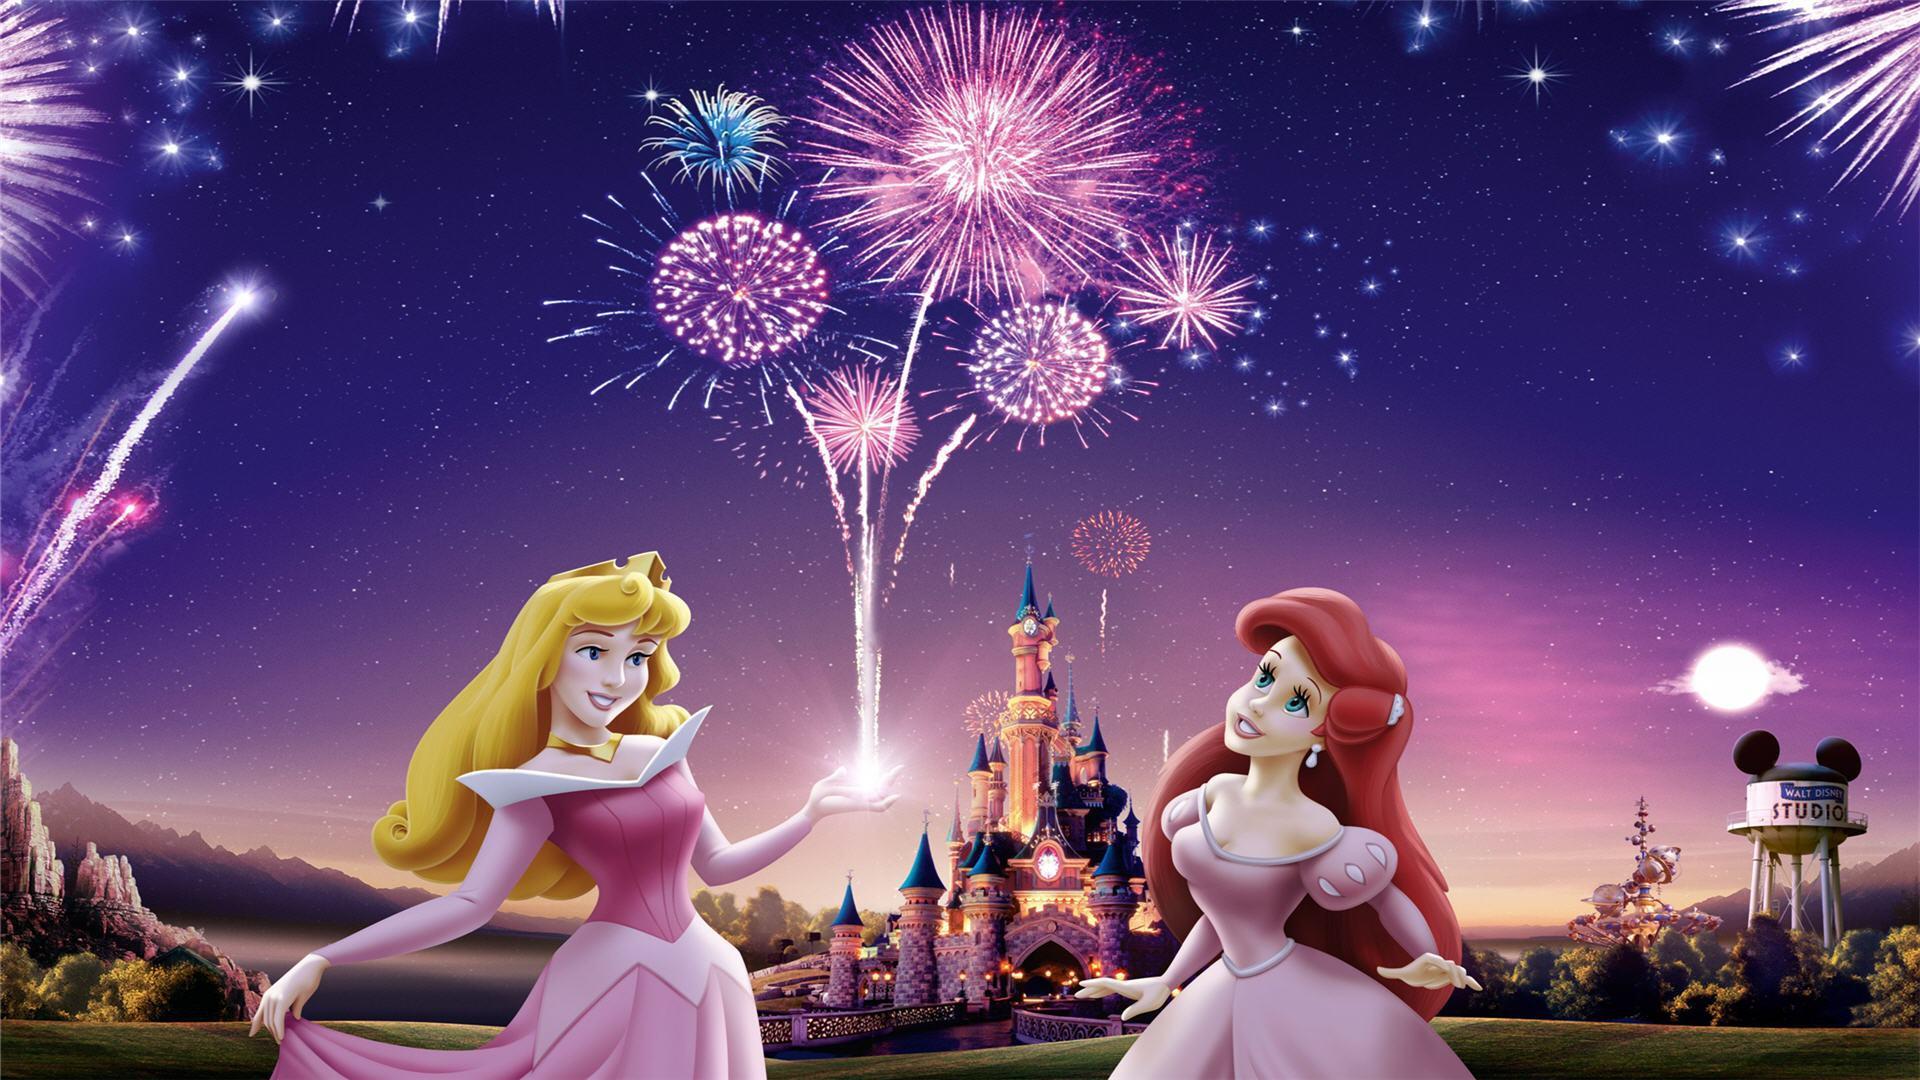 50 Disney Princesses Wallpapers